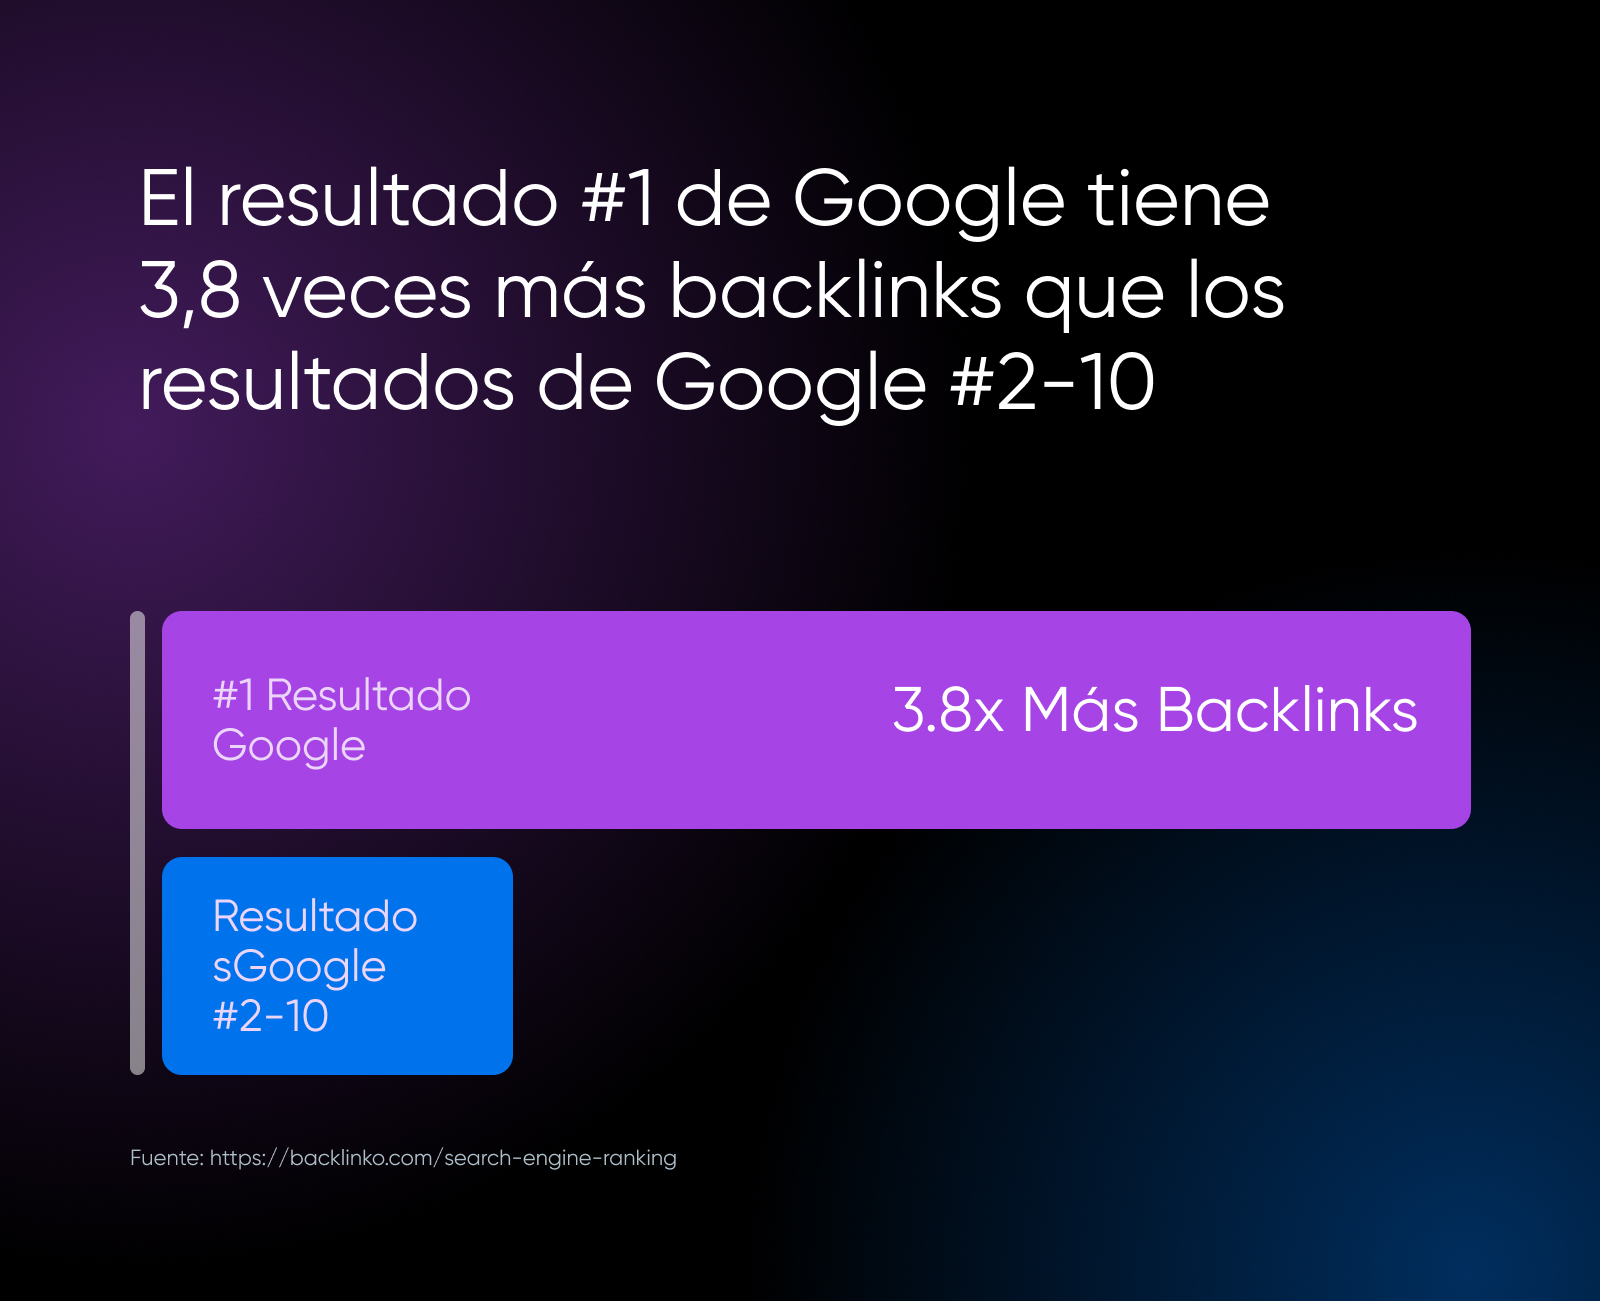 Influencia de los backlinks en la posición de un sitio web, al ser calificado en SEO por Google.